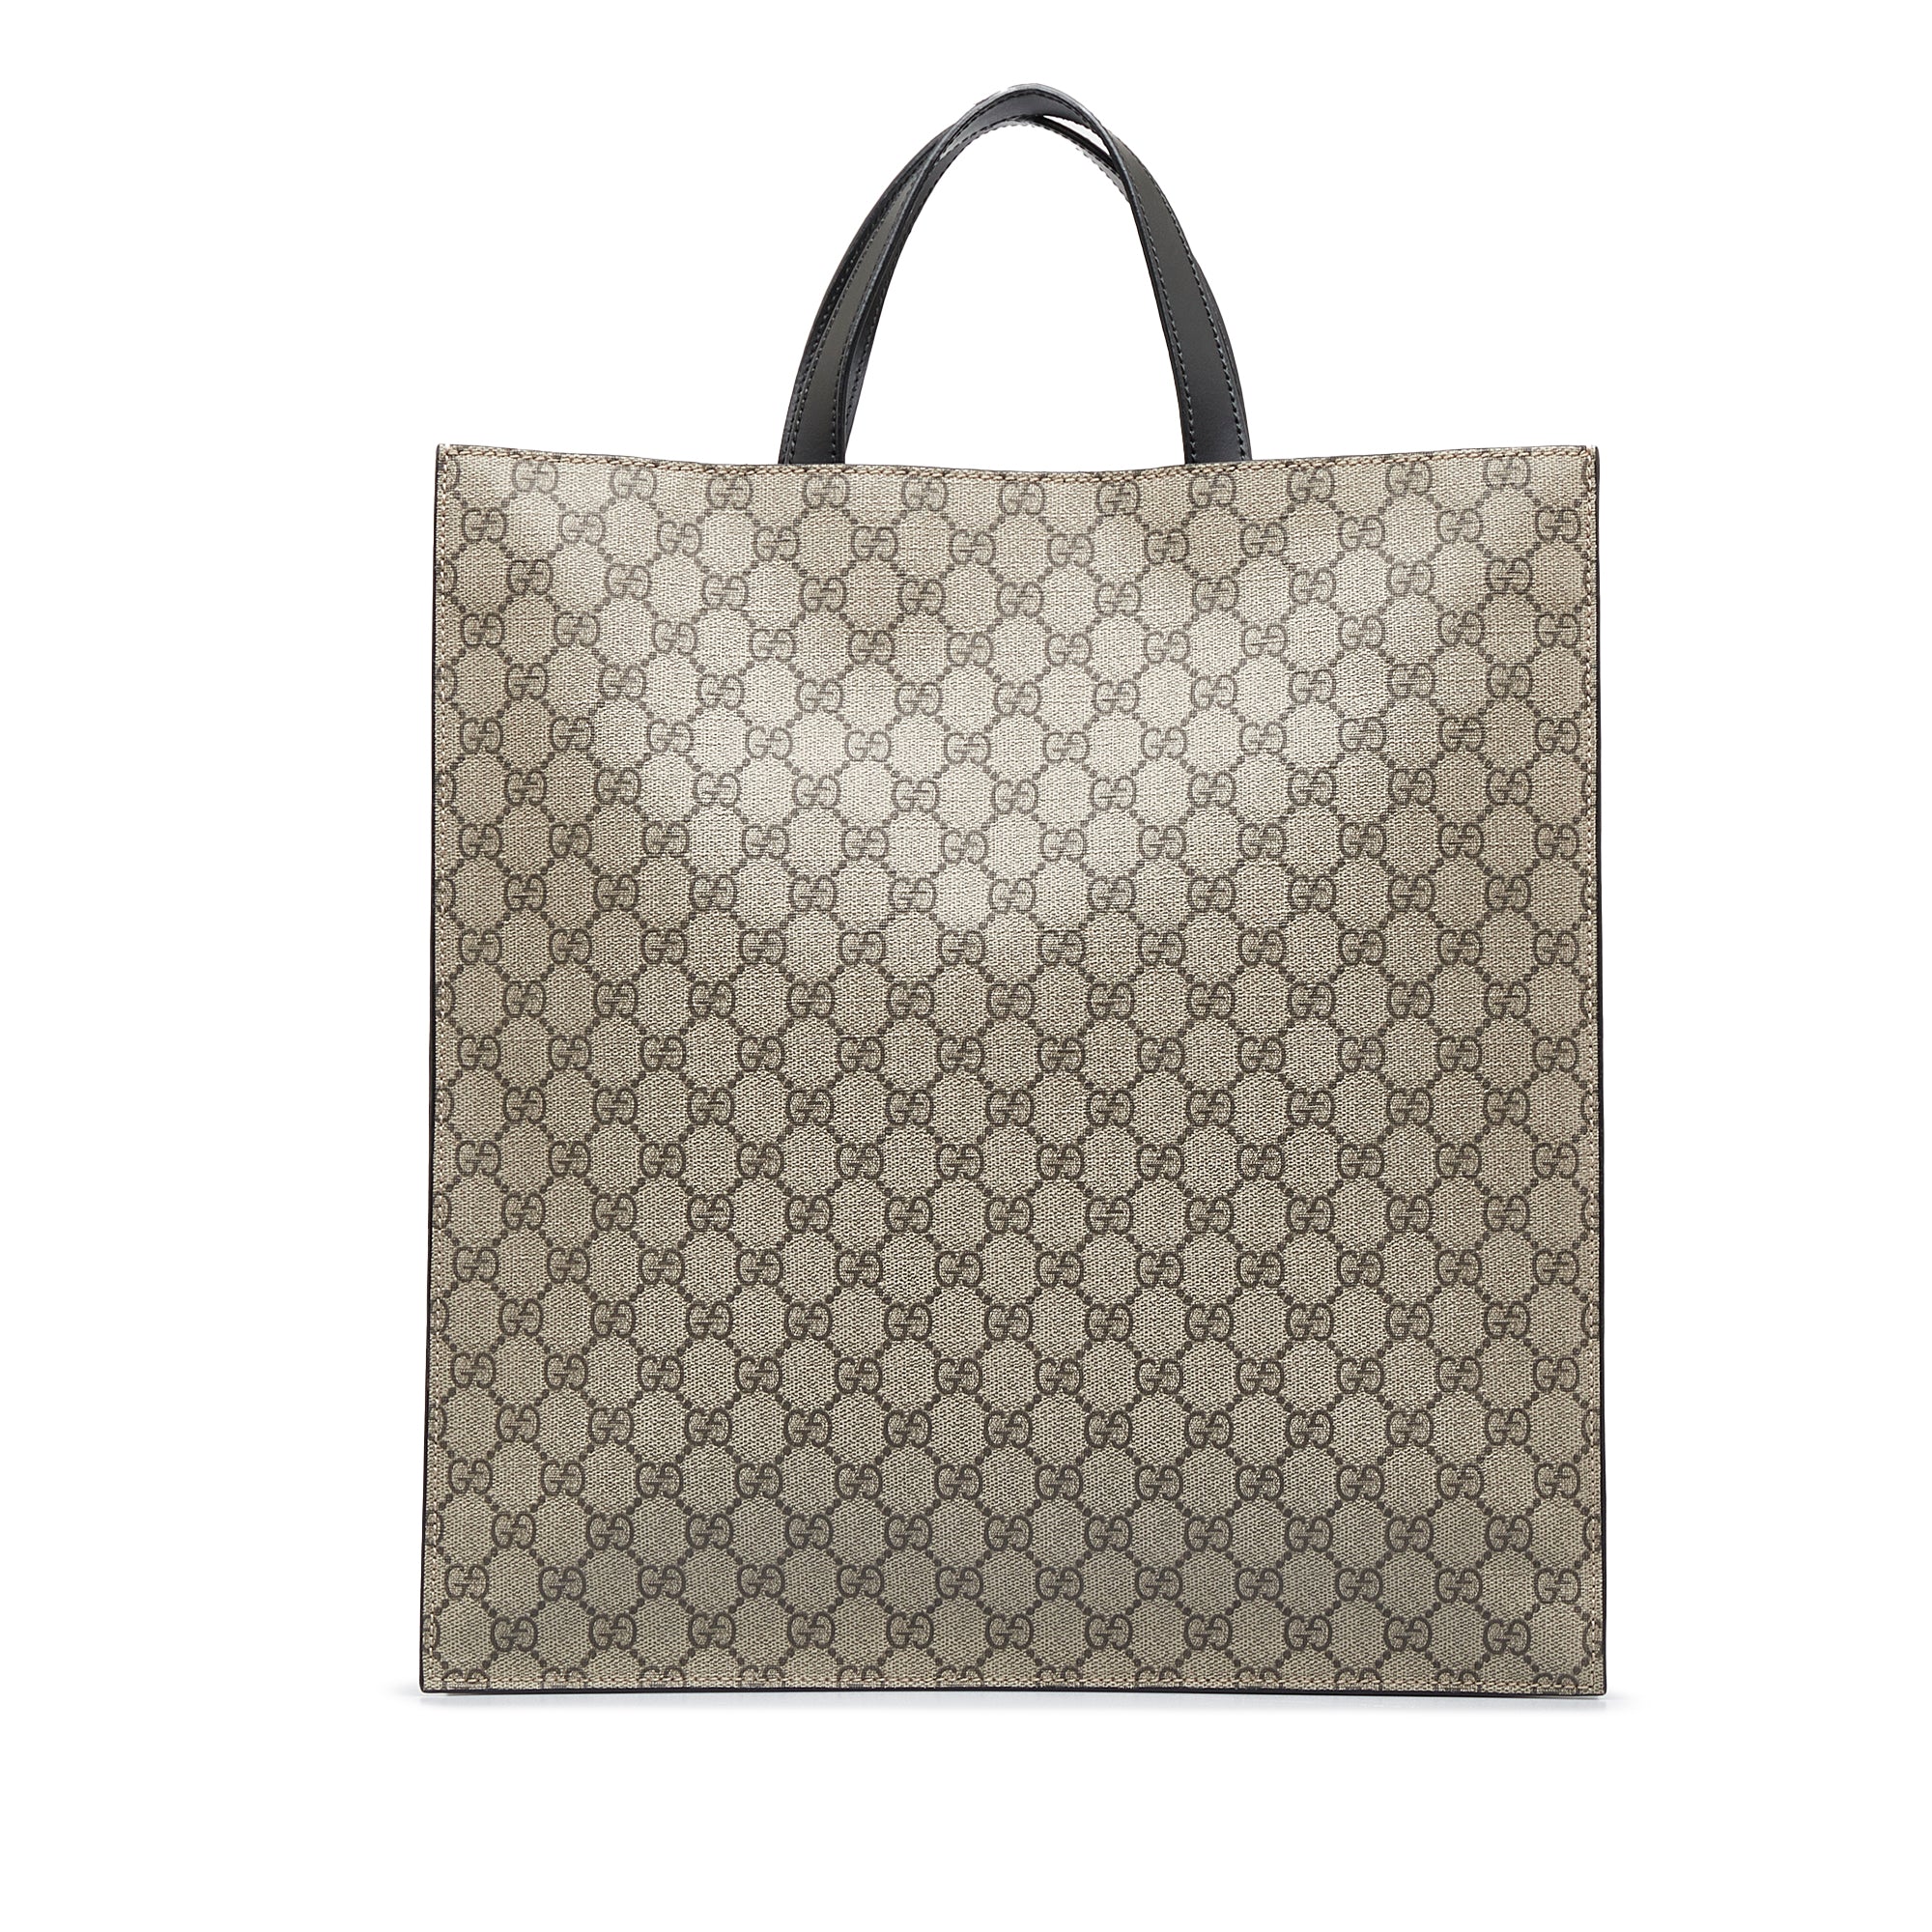 Gucci Convertible Canvas Bag